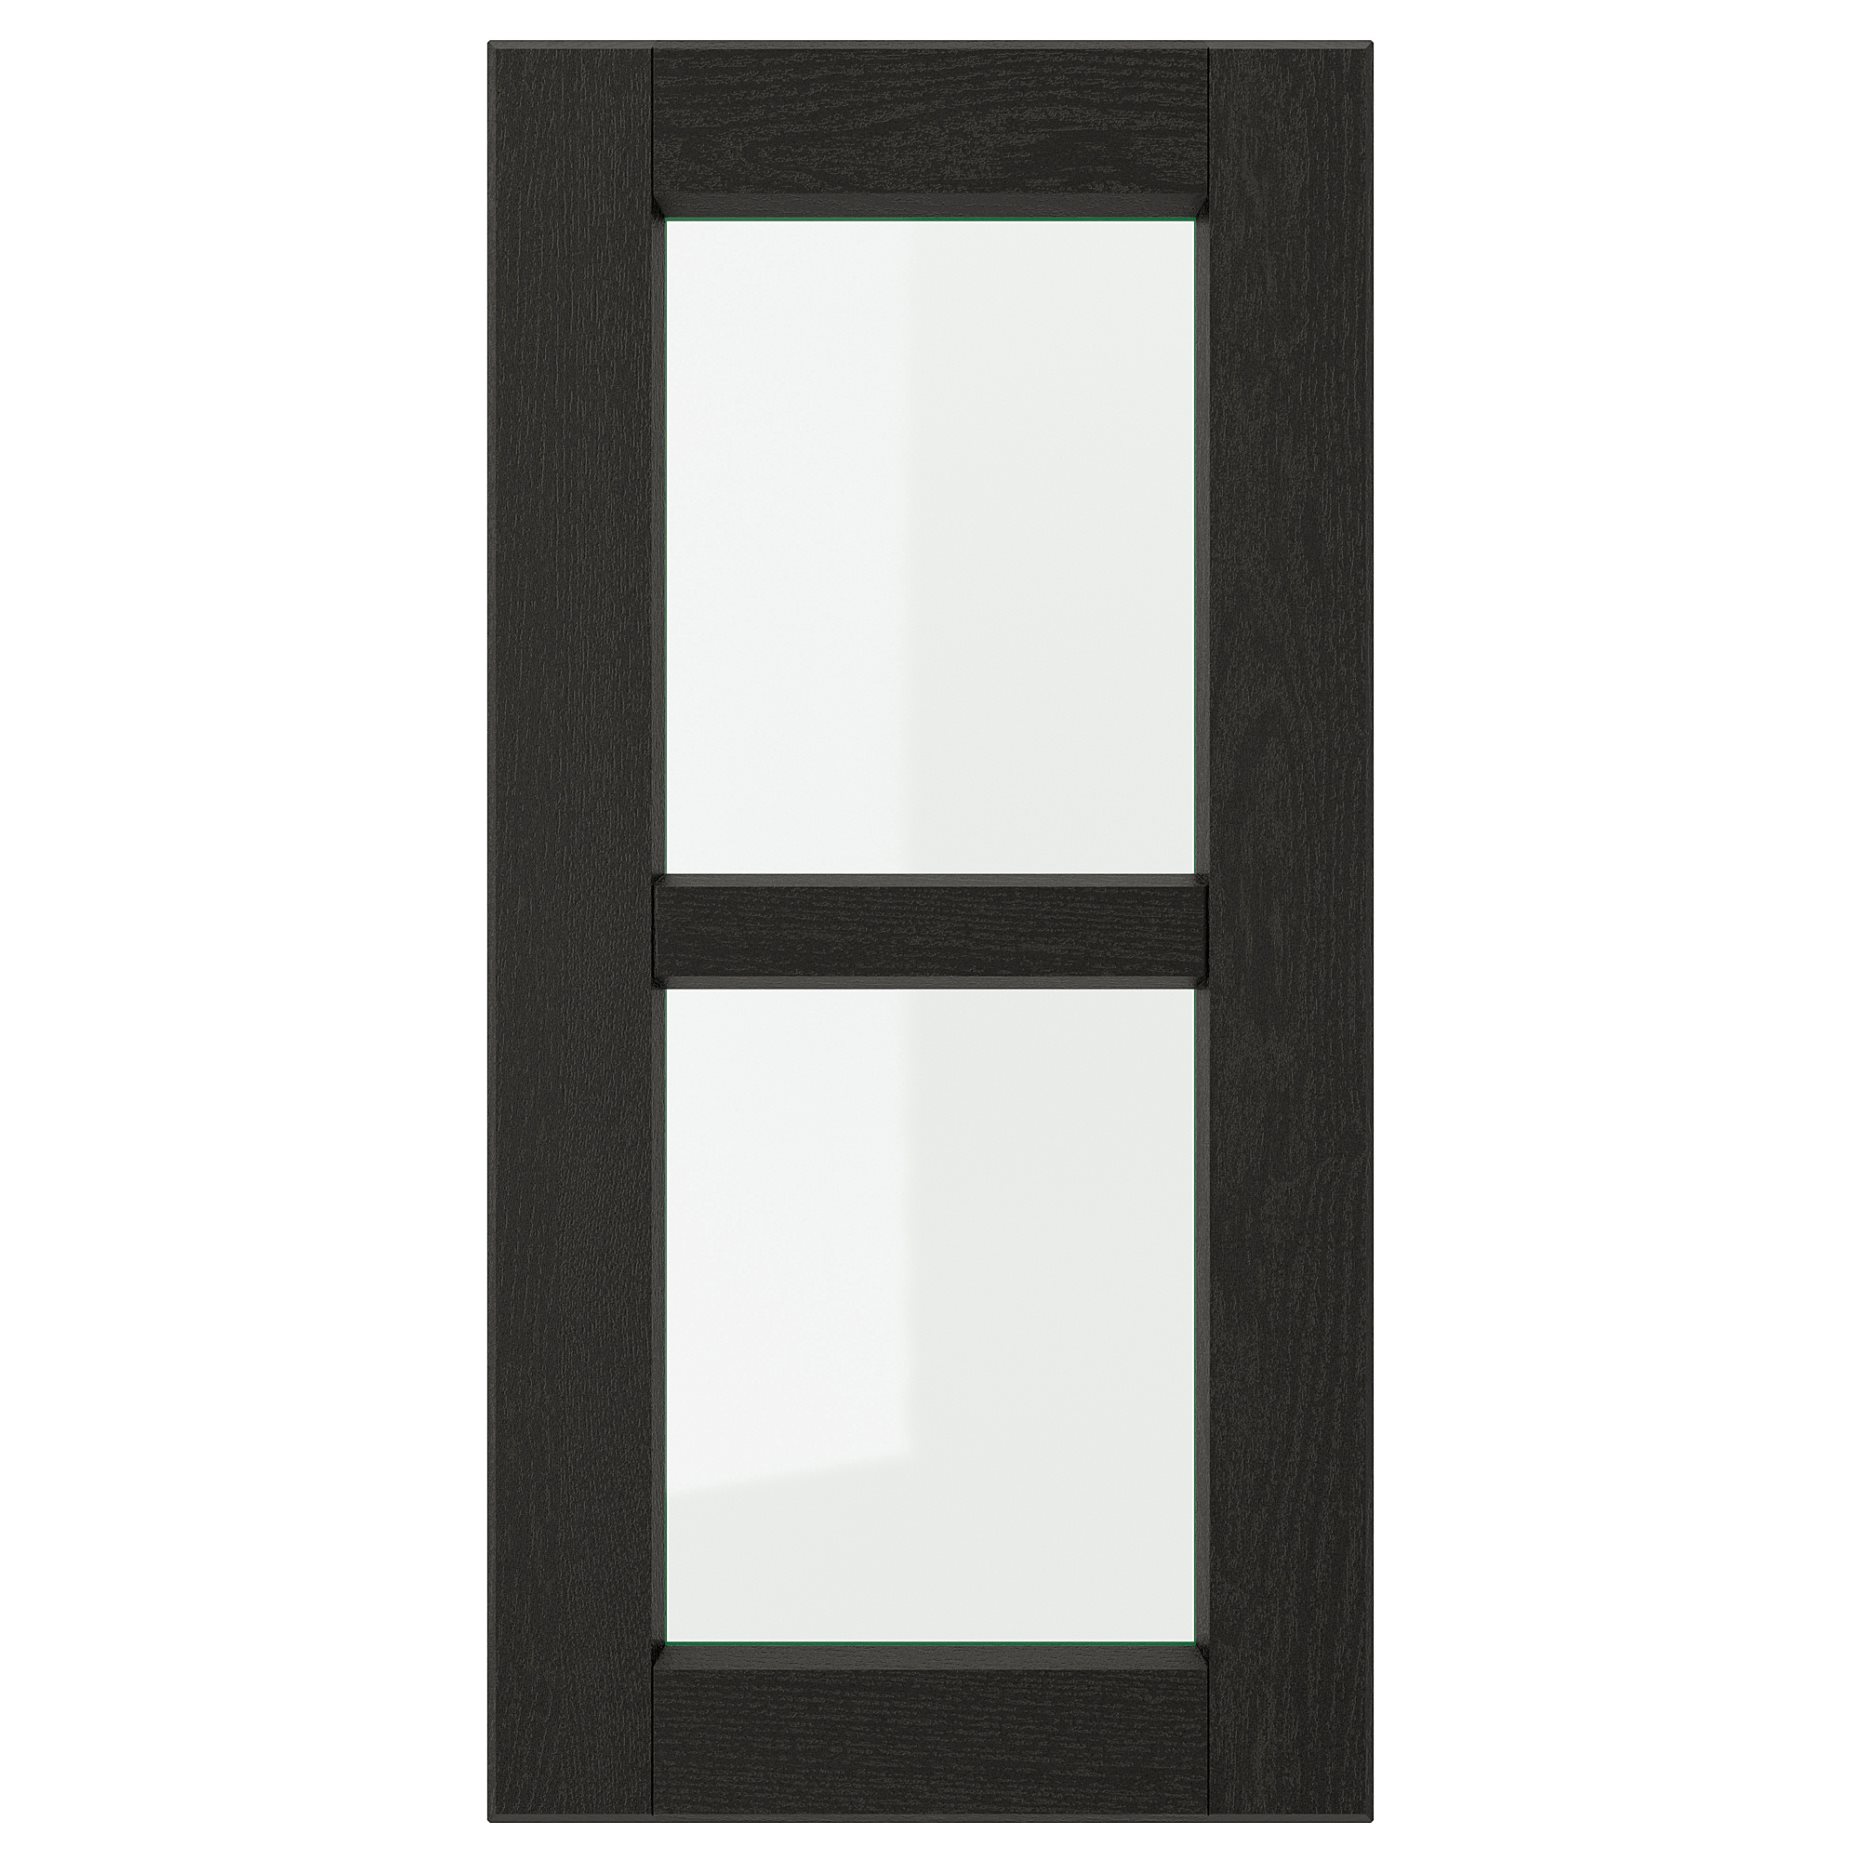 LERHYTTAN, glass door, 603.560.78